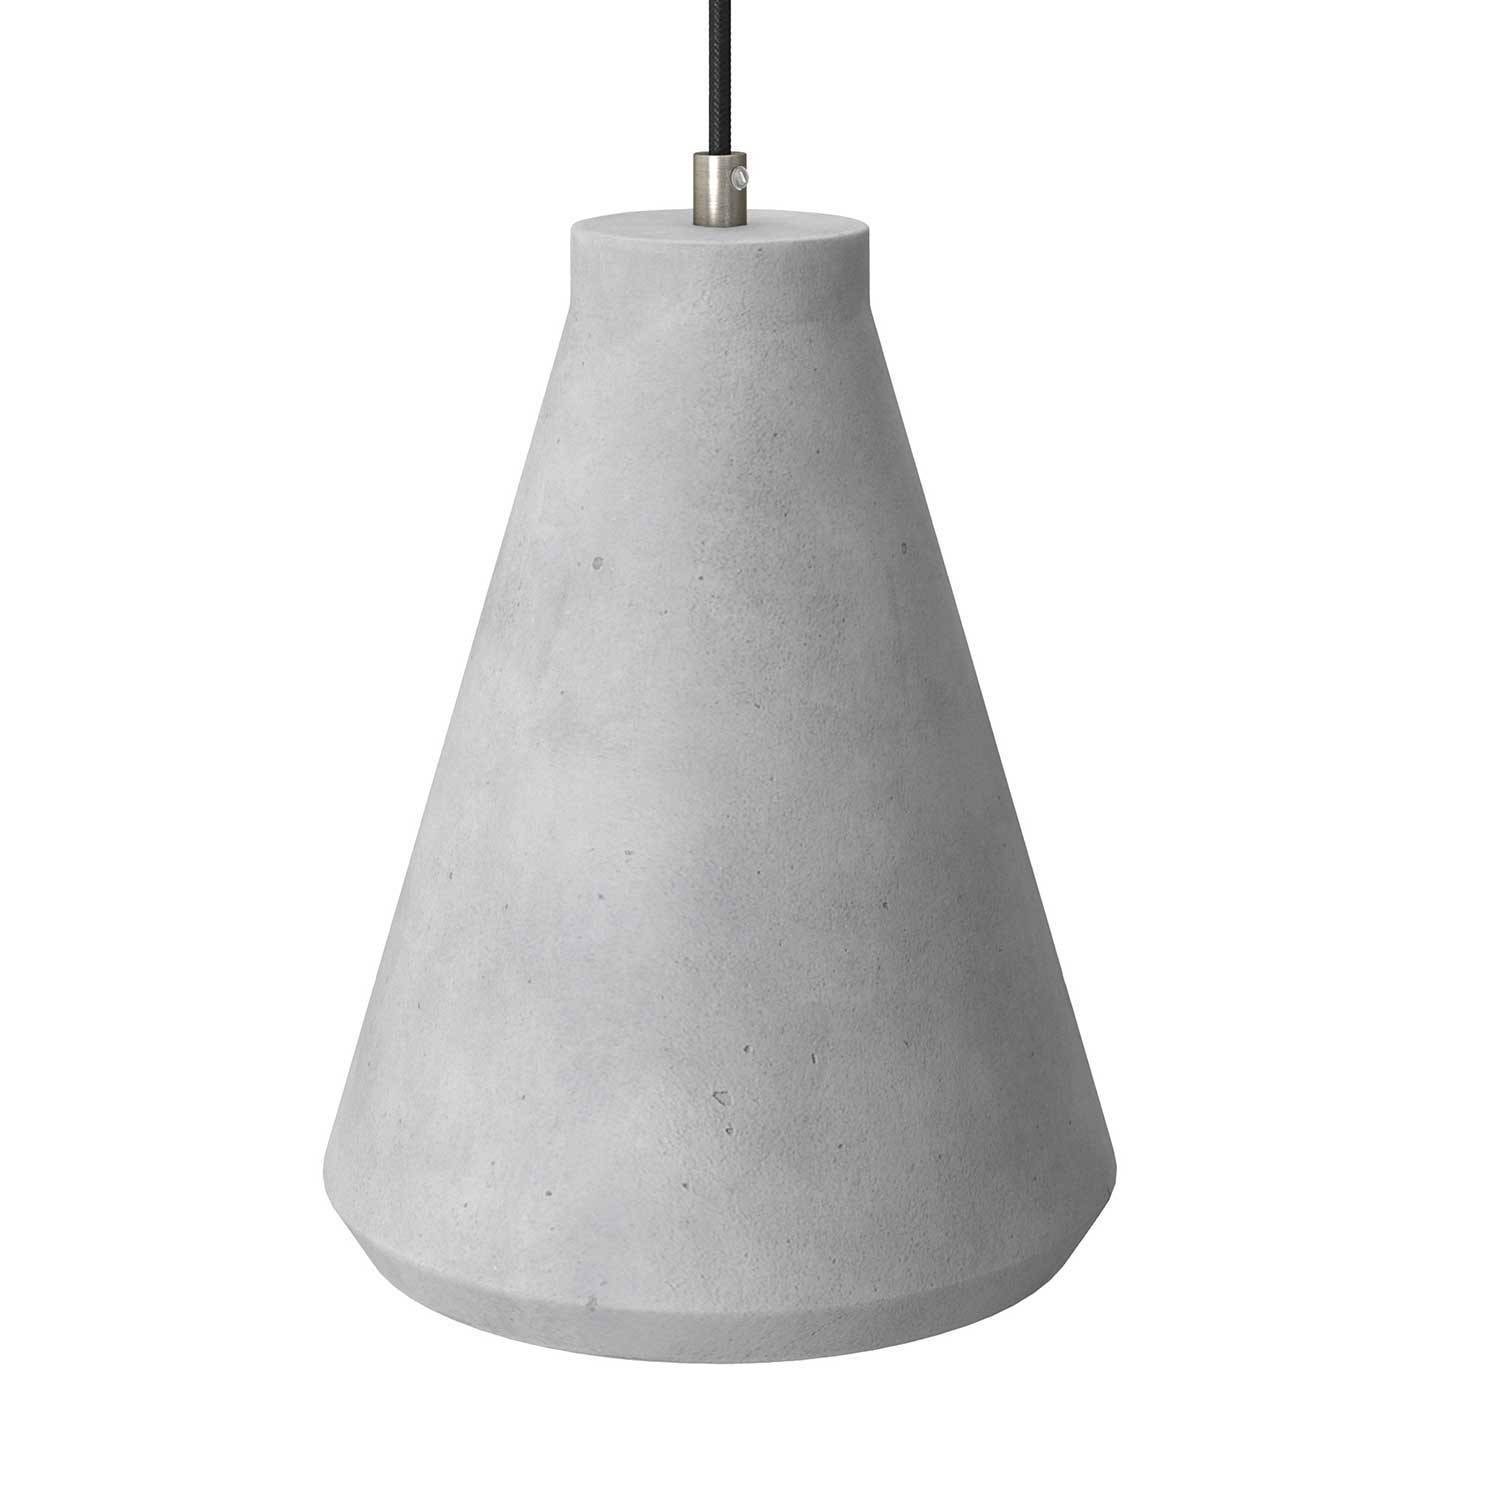 Pendelleuchte inklusive Glühbirne, Textilkabel, trichterförmigem Lampenschirm aus Zement und Metall-Zubehör - Made in Italy